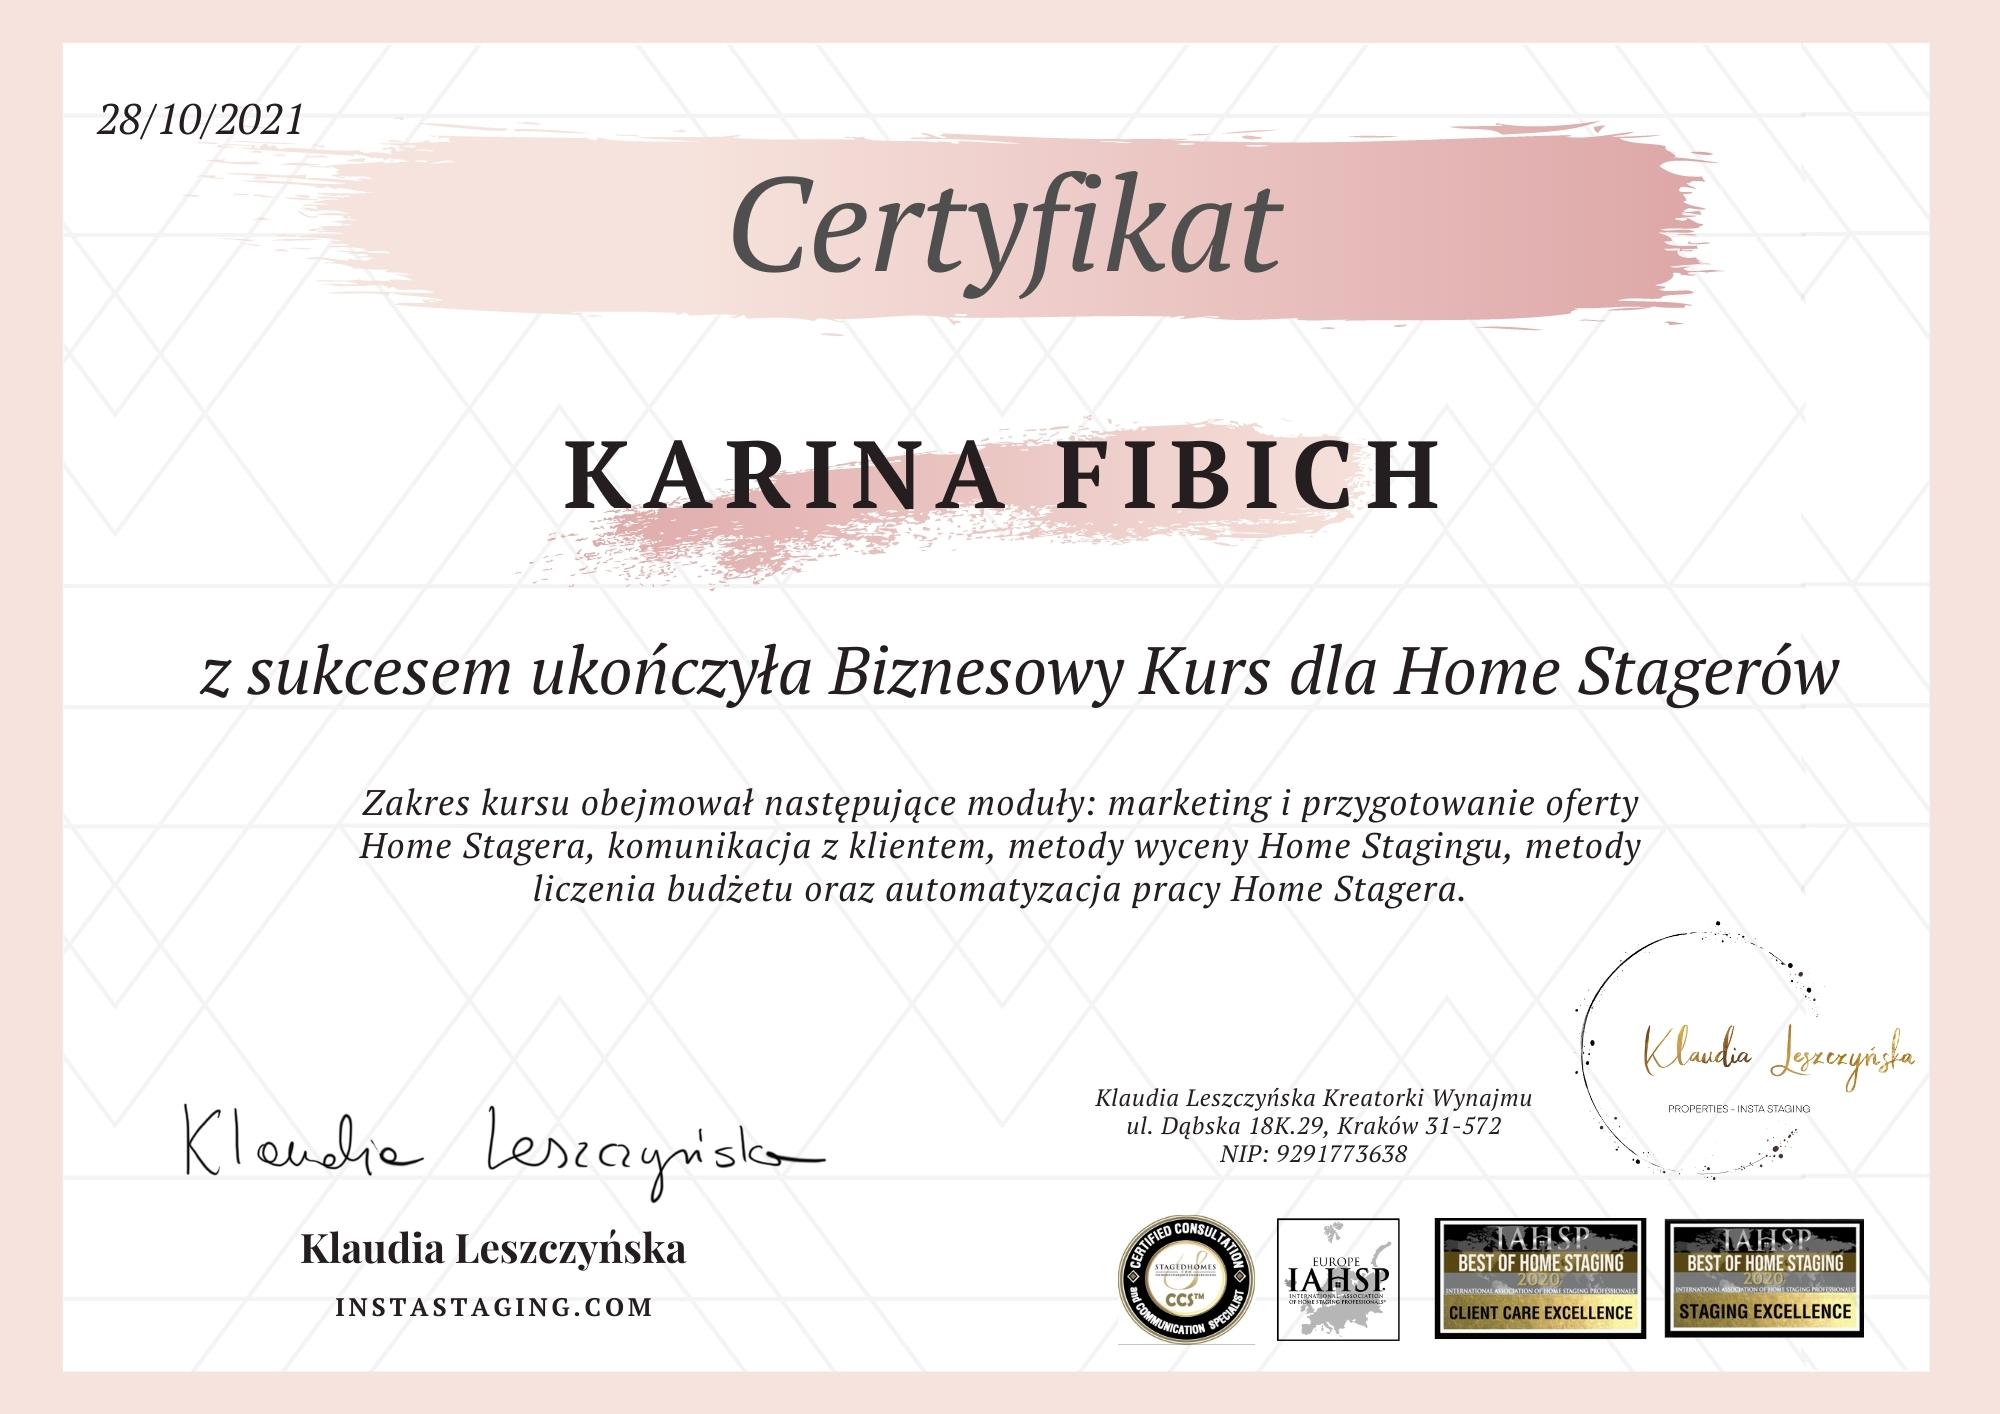 O MNIE- Certyfikat HS Biz Karina Fibich